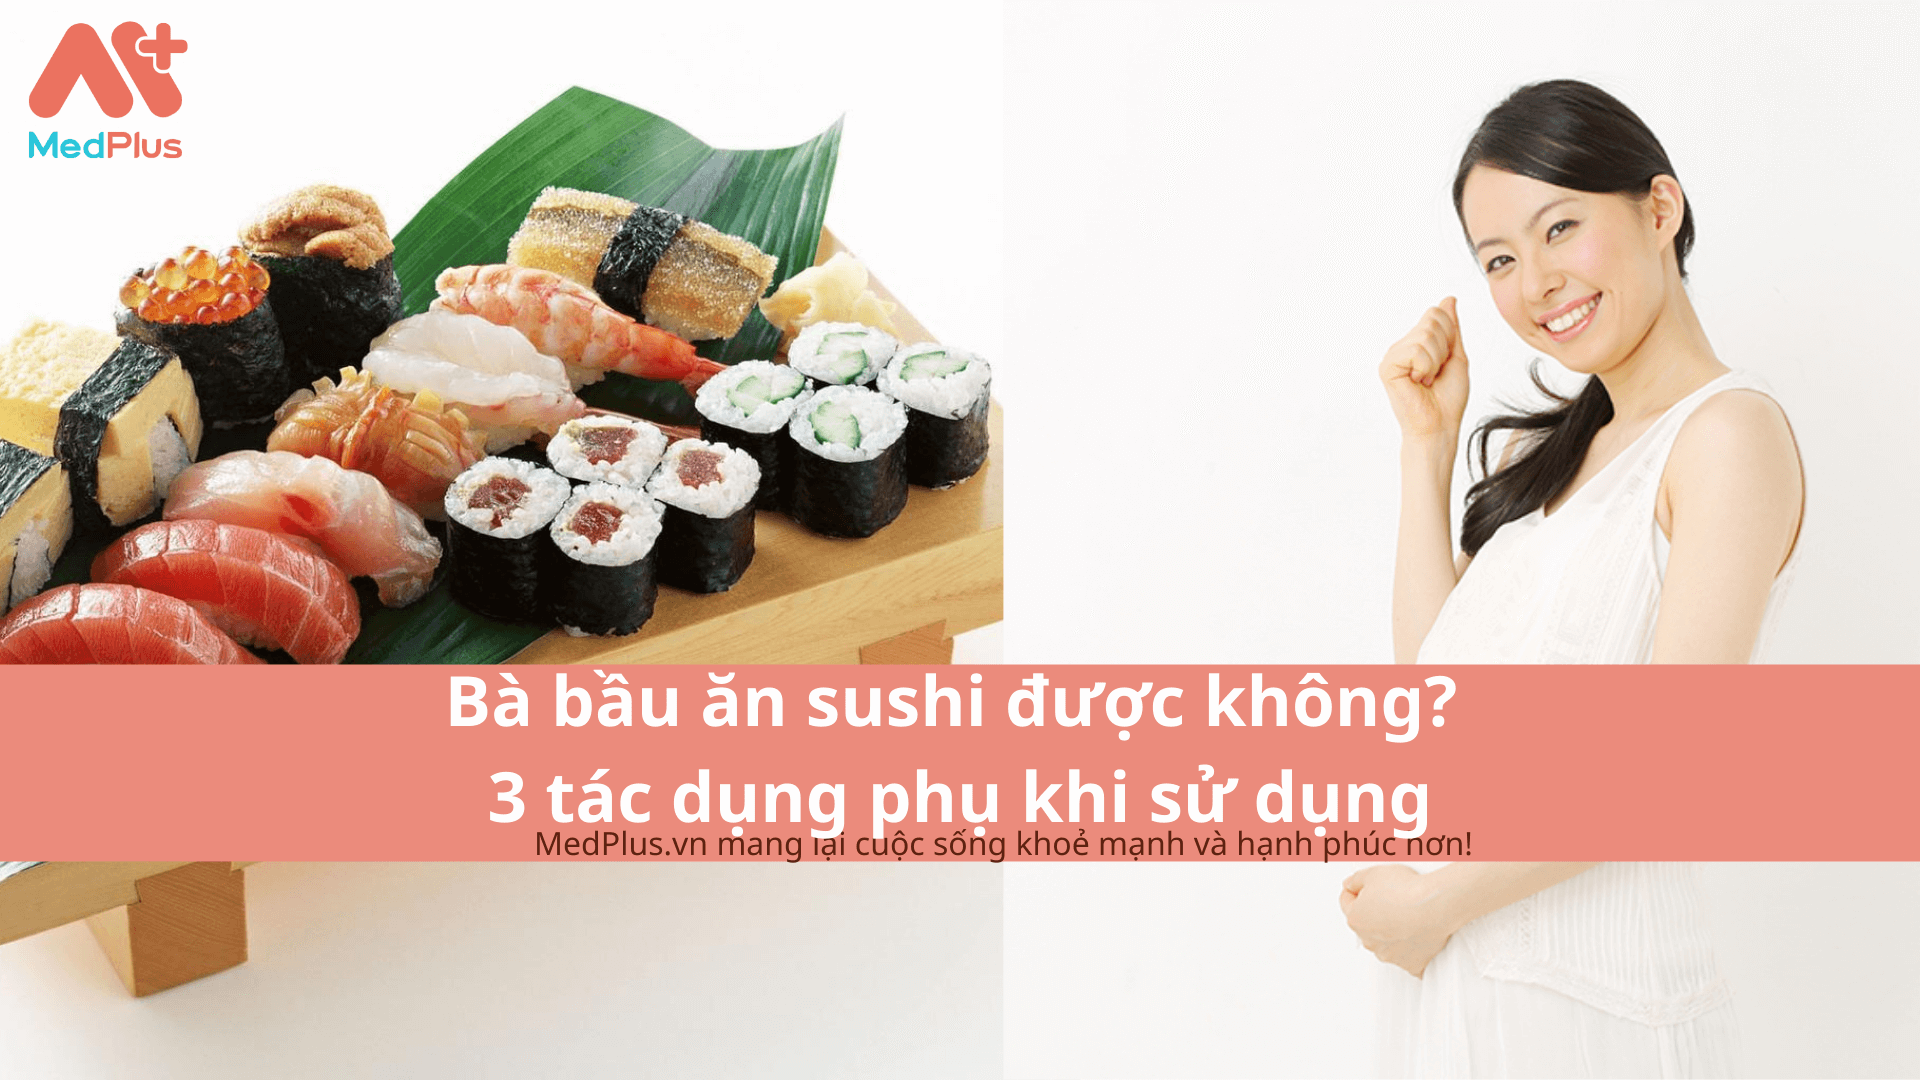 Bà bầu ăn sushi được không? 3 tác dụng phụ khi sử dụng